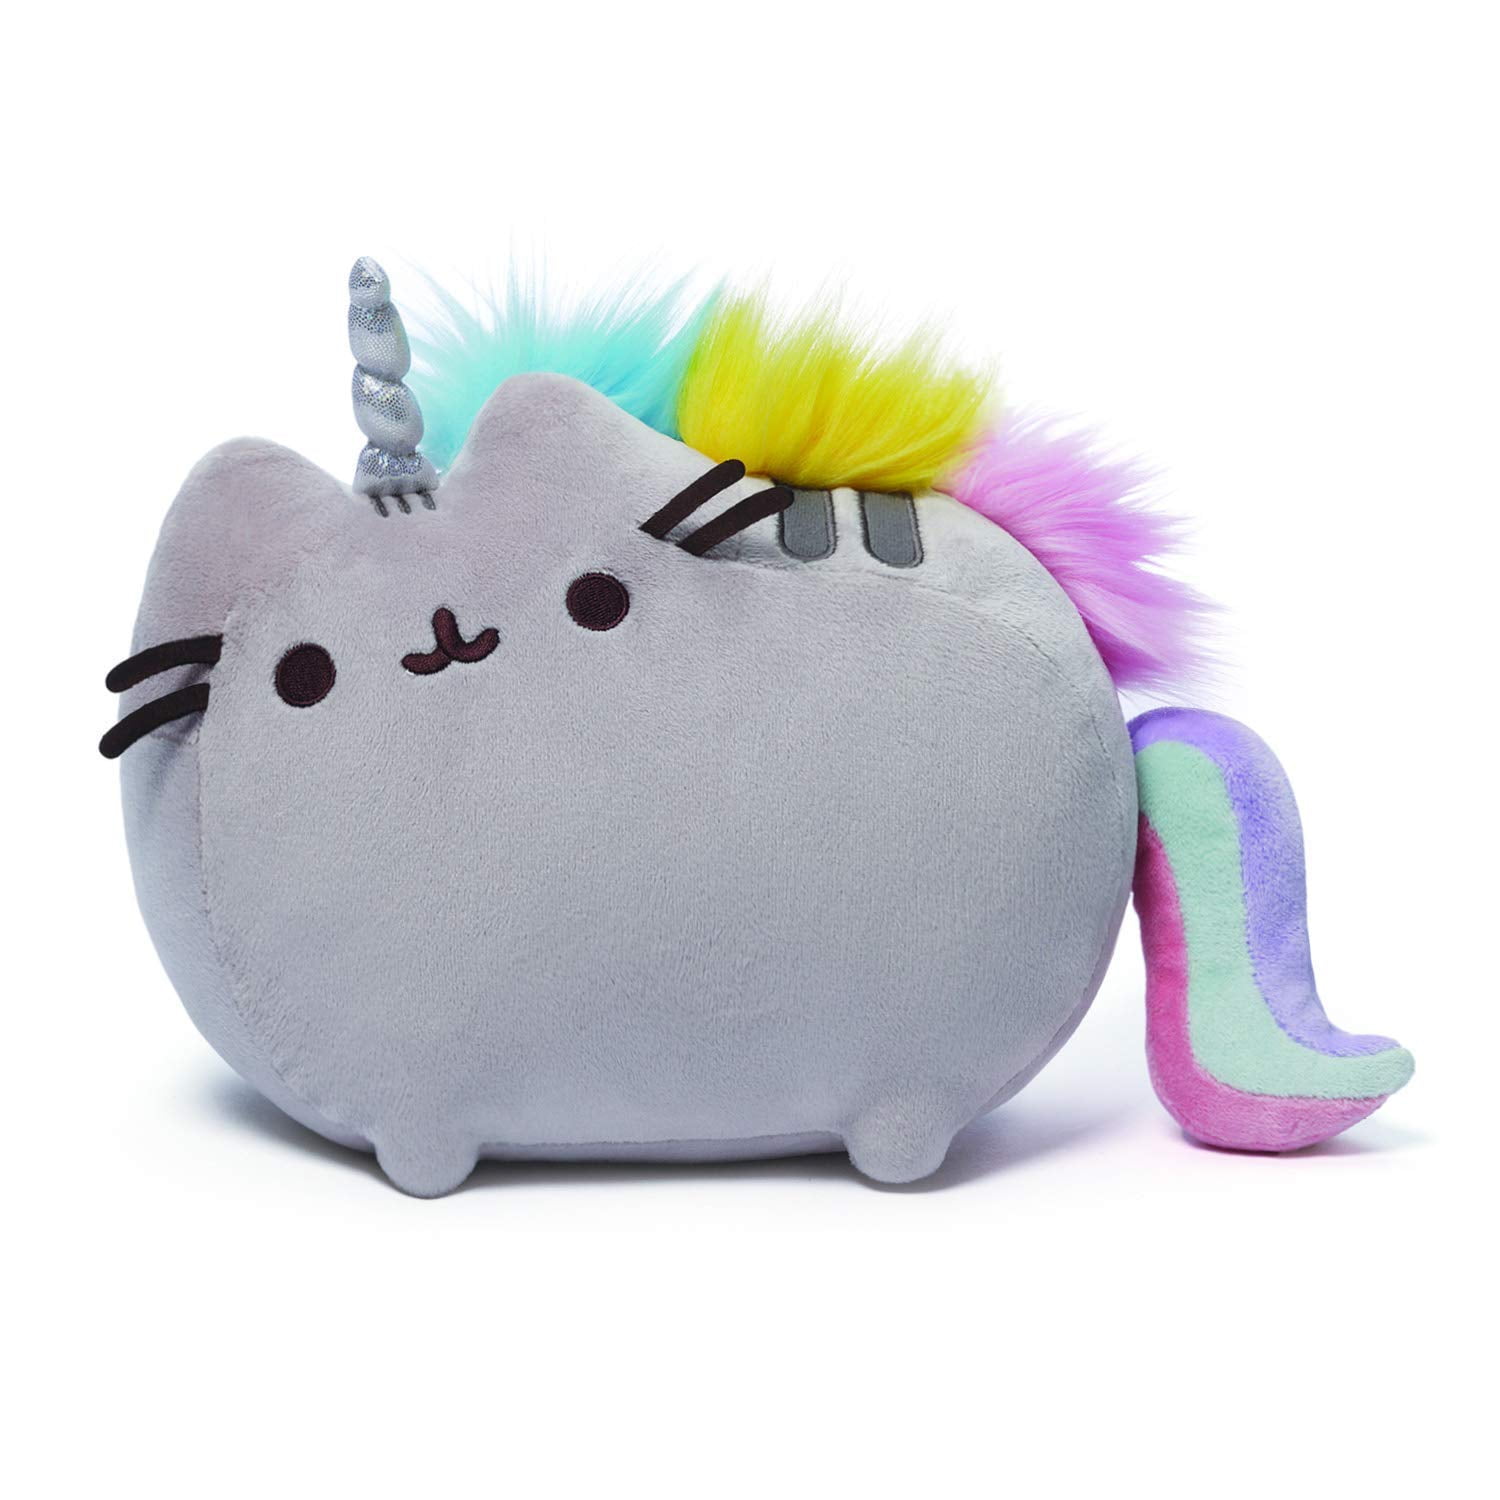 13" GUND Pusheenicorn Unicorn Stuffed Animal Plush 